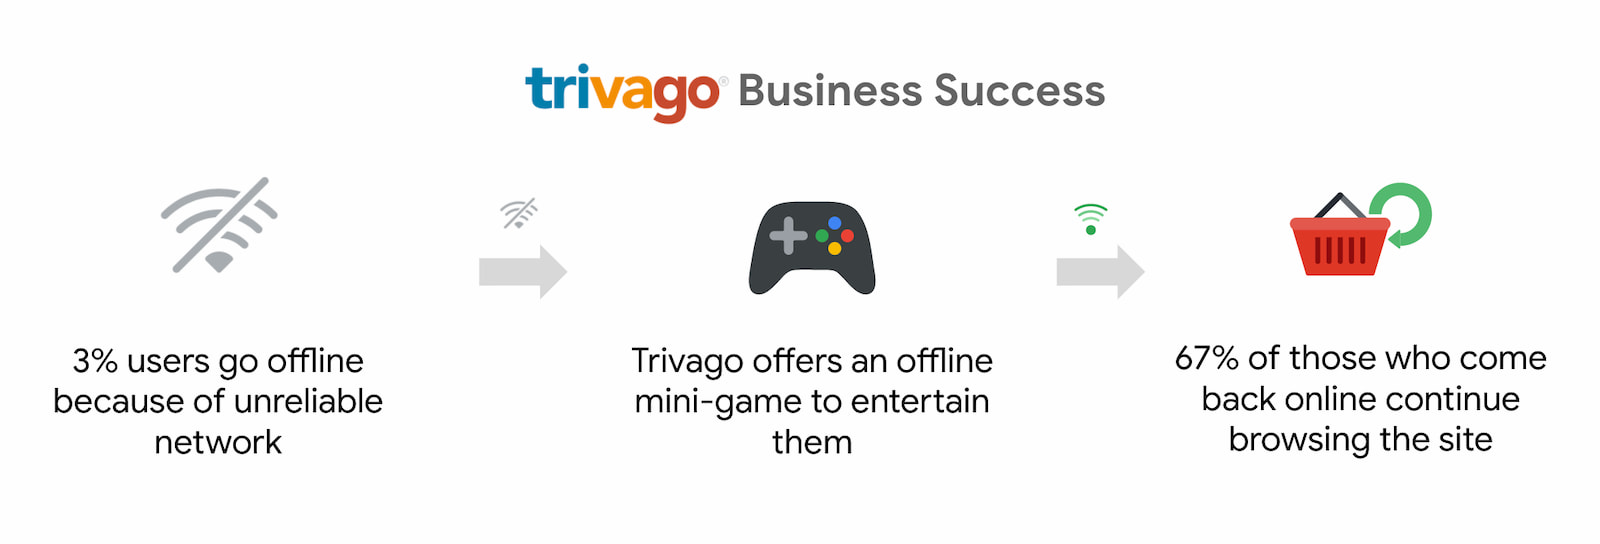 ב-Trivago נרשמה עלייה של 67% במספר המשתמשים שחזרו לאינטרנט והמשיכו לגלוש.